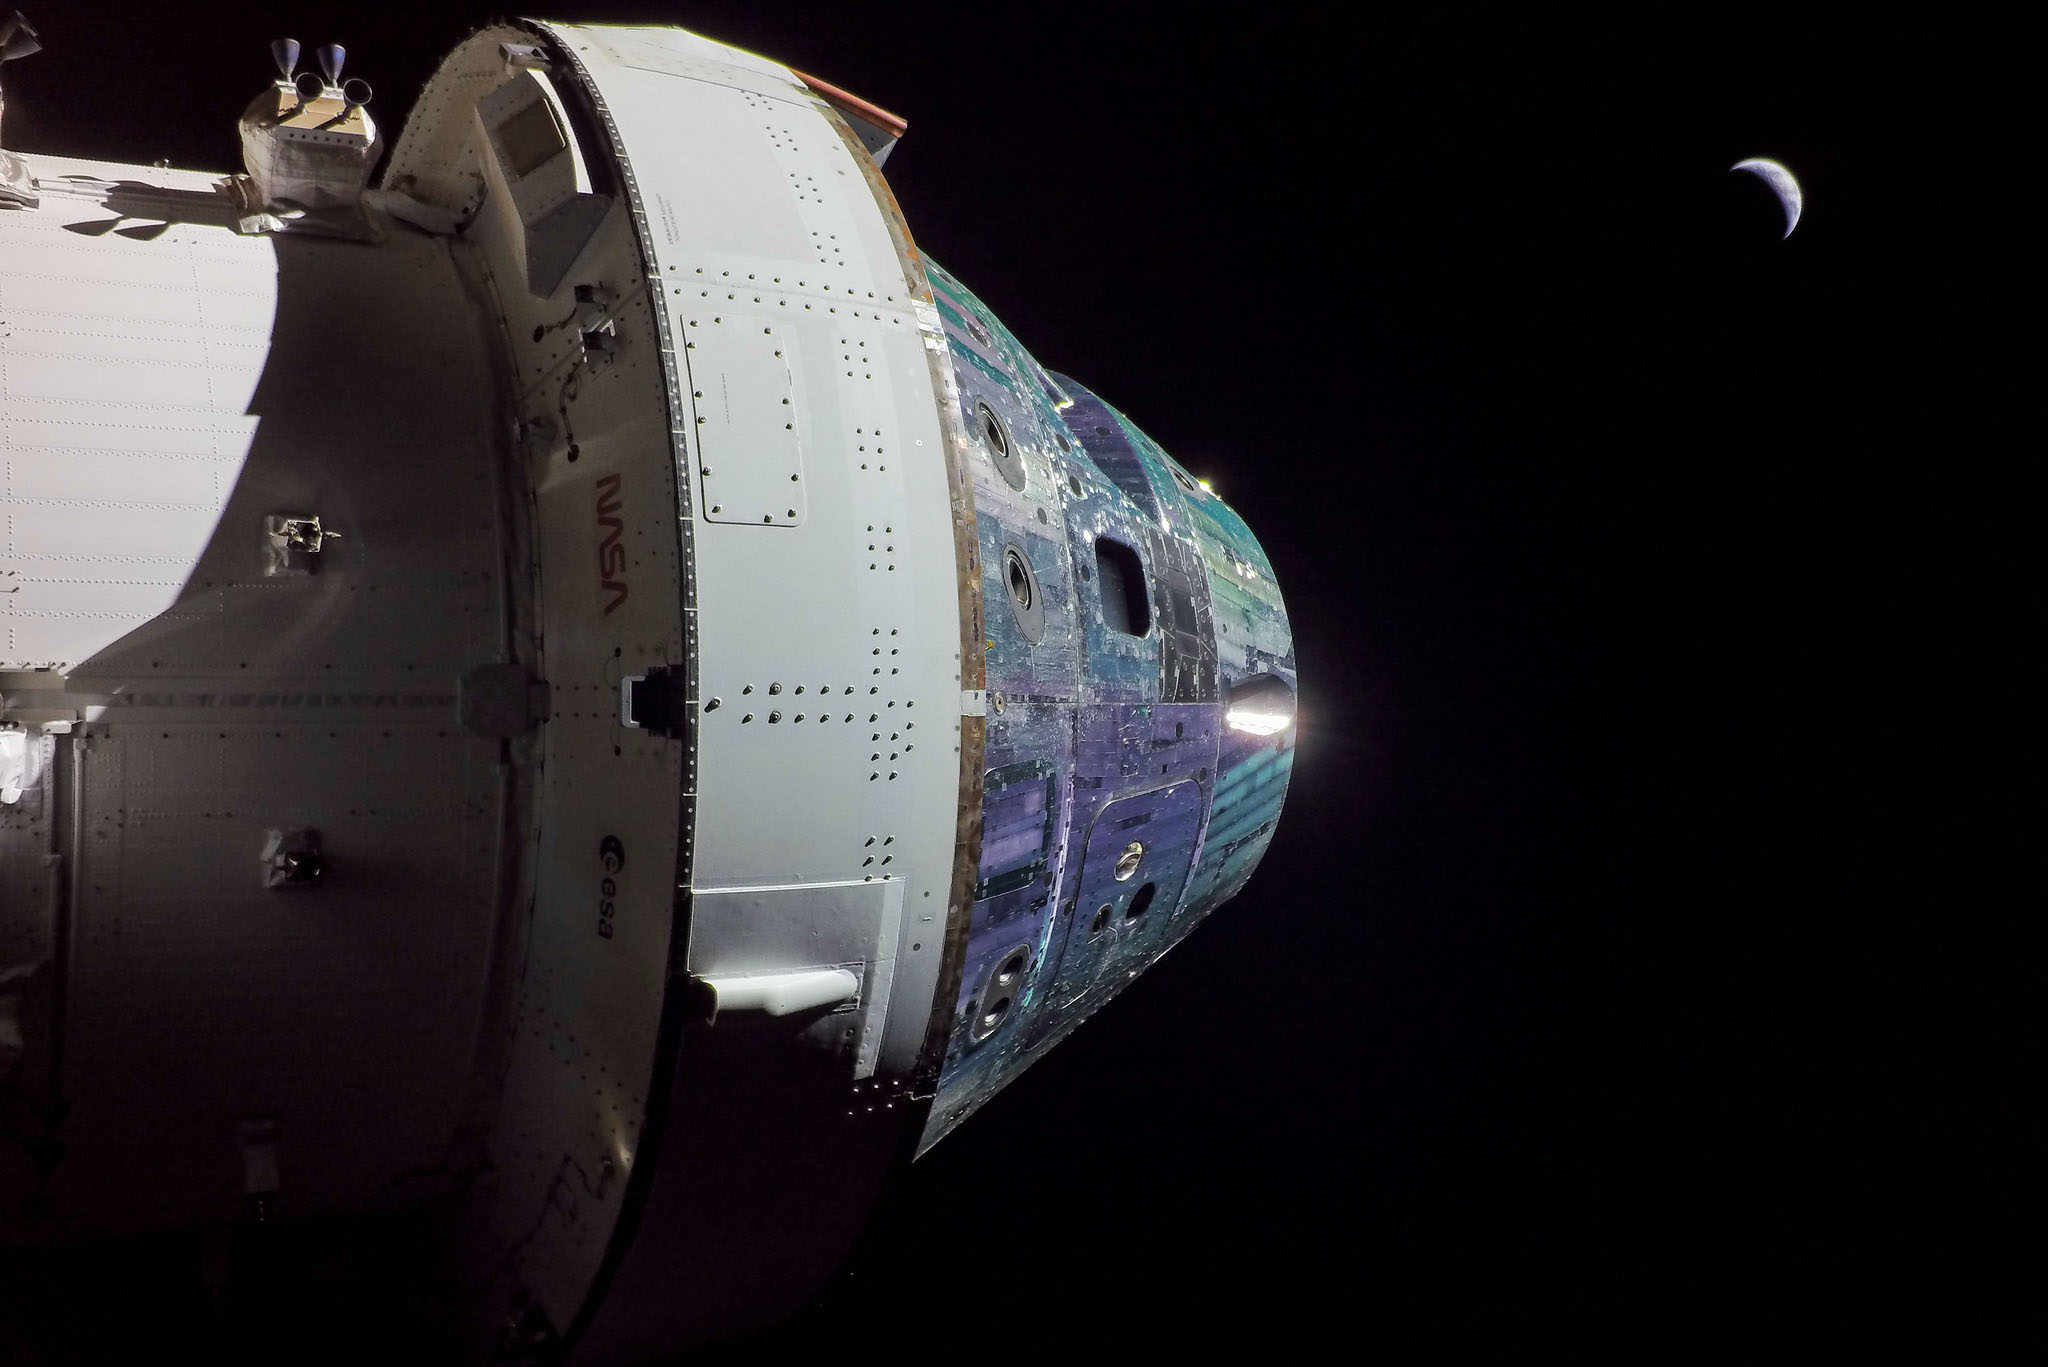 فضاپیمای اوراین در مسیر بازگشت به زمین و فرود آبی قرار دارد